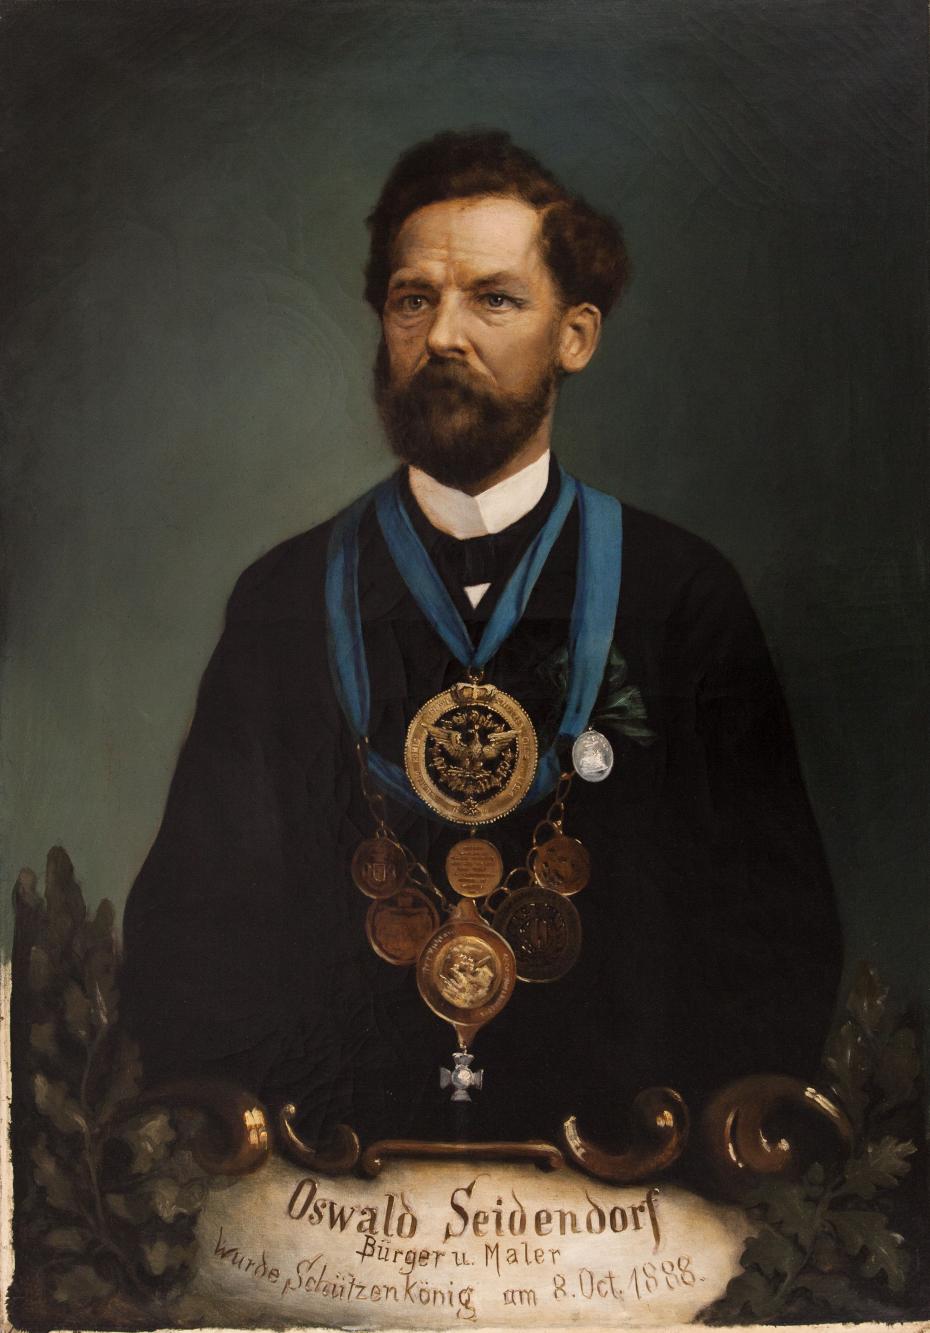 Portret króla kurkowego Oswalda Seidendorfa